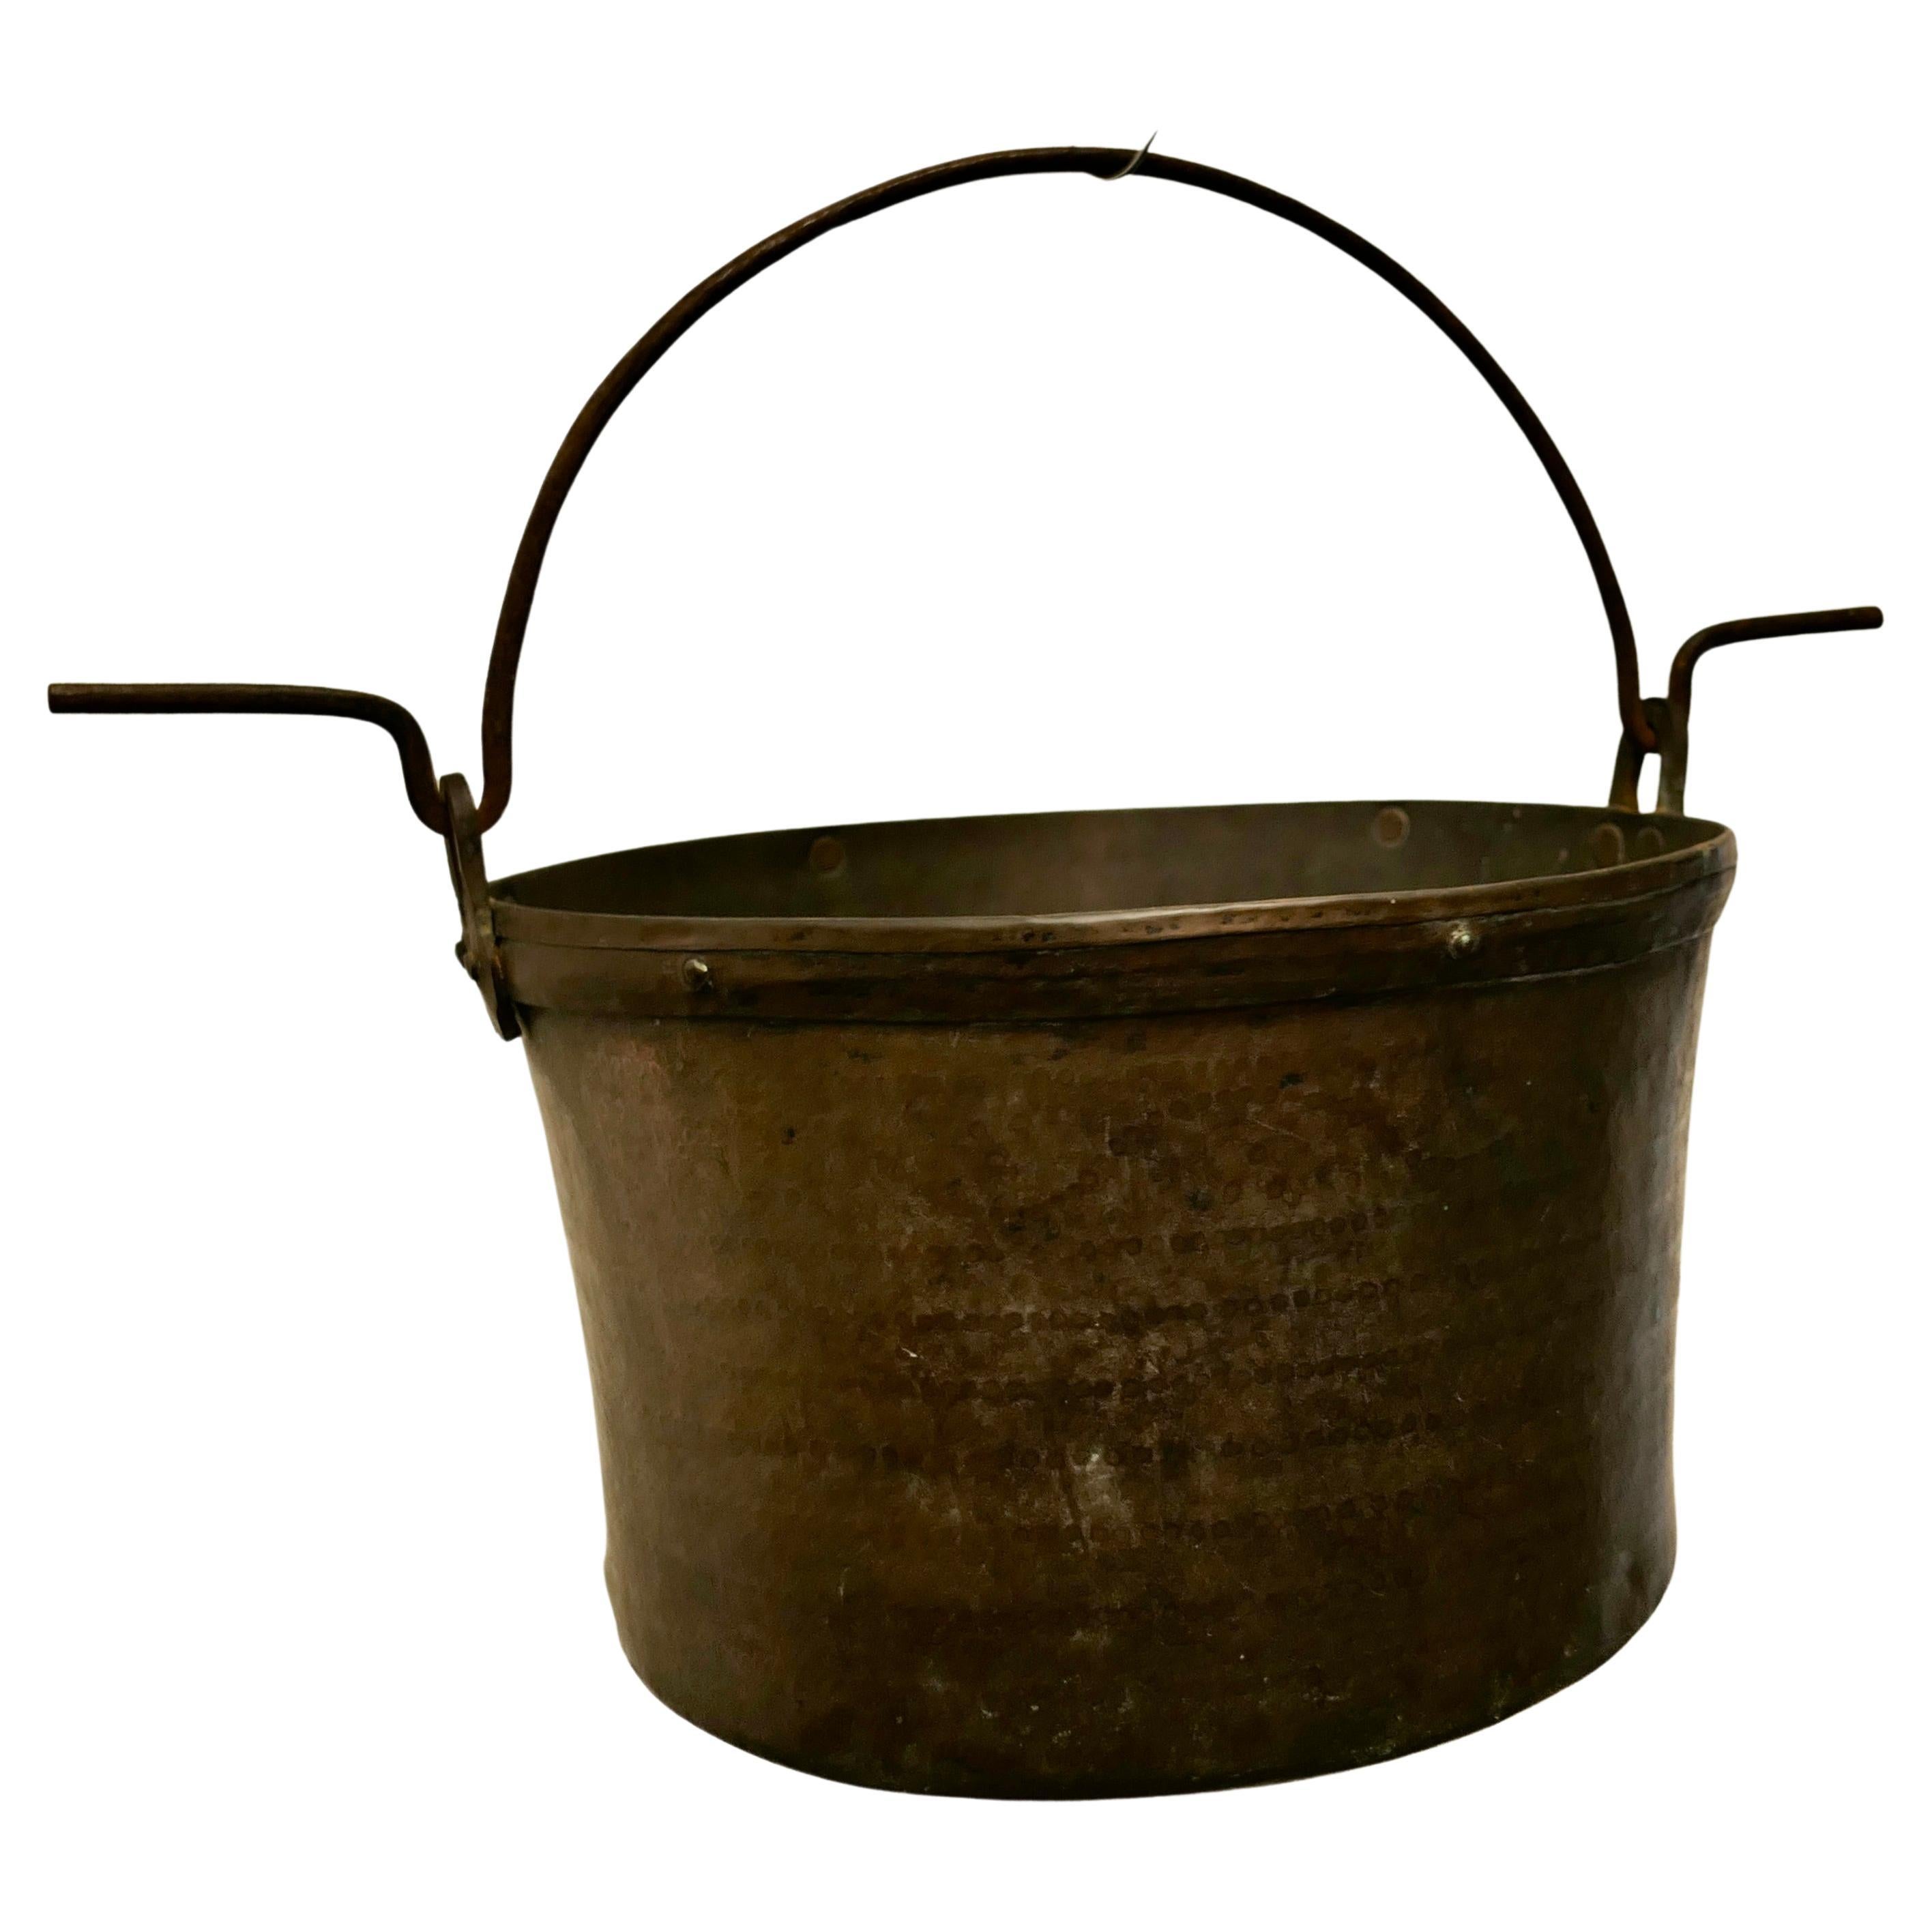 Très grand pot de cuisine en cuivre du 19ème siècle, chaudron